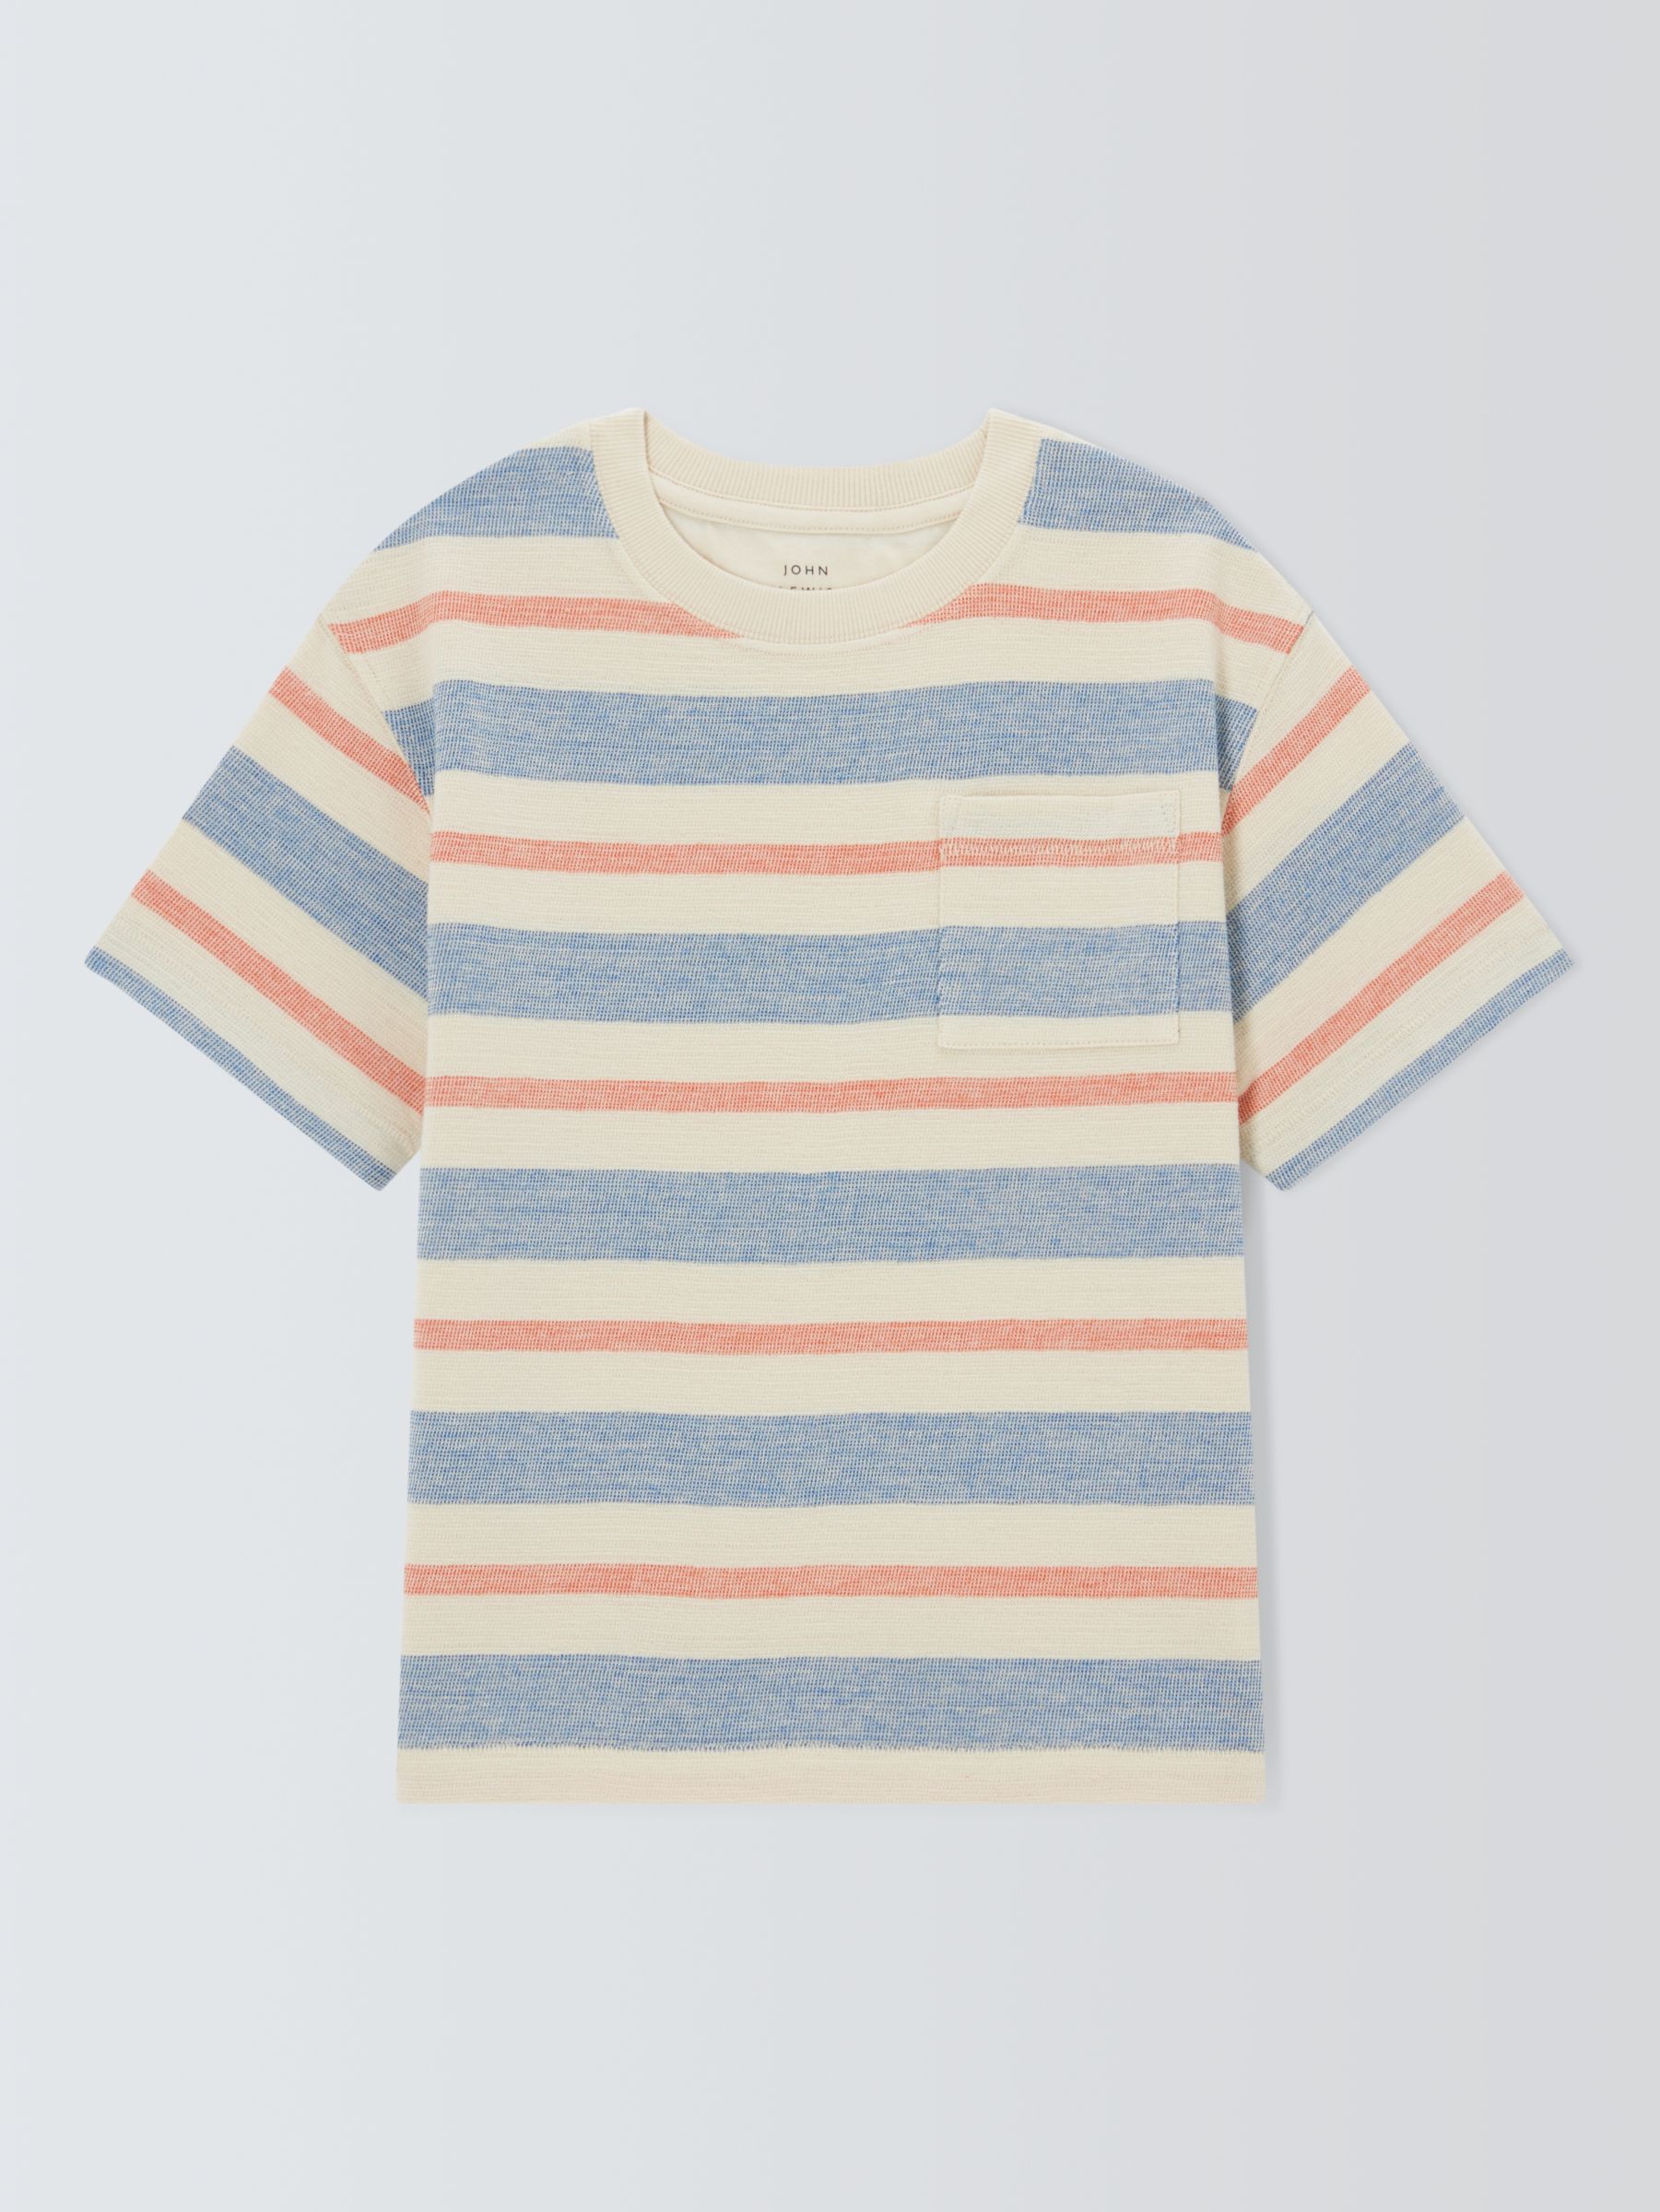 John Lewis Kids' Textured Stripe T-Shirt, Multi, 3 years